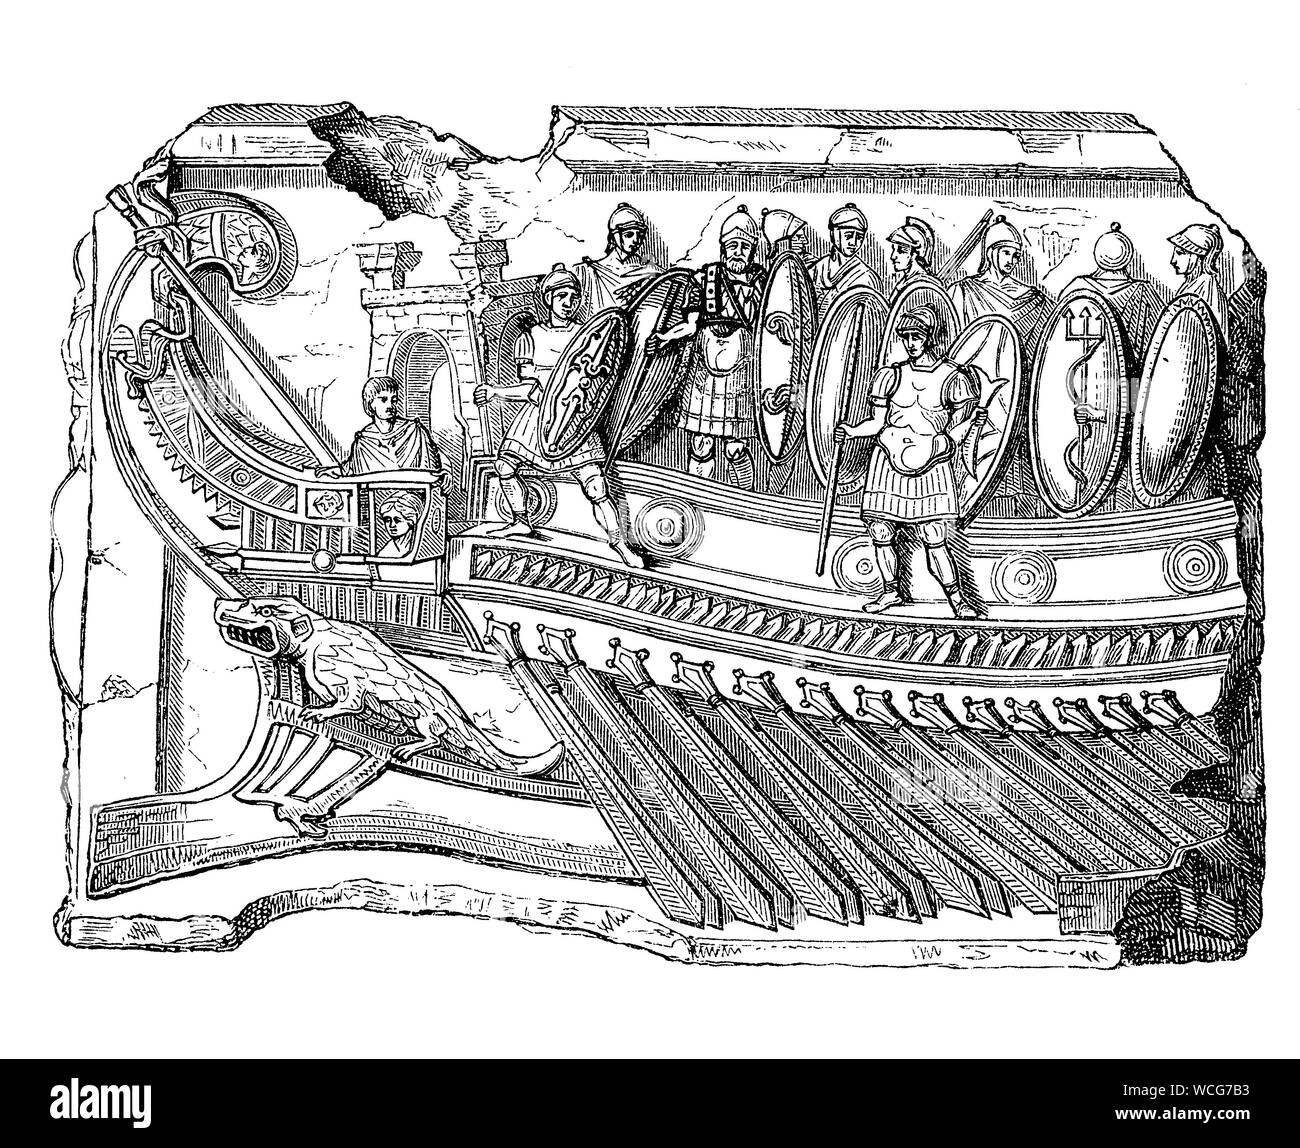 Rom antike: Admiral Schiff Fragment von Antonius bei Actium Schlacht, das Schiff war eine leichte liburnischen Kombüse mit einer Reihe von Ruder Stockfoto